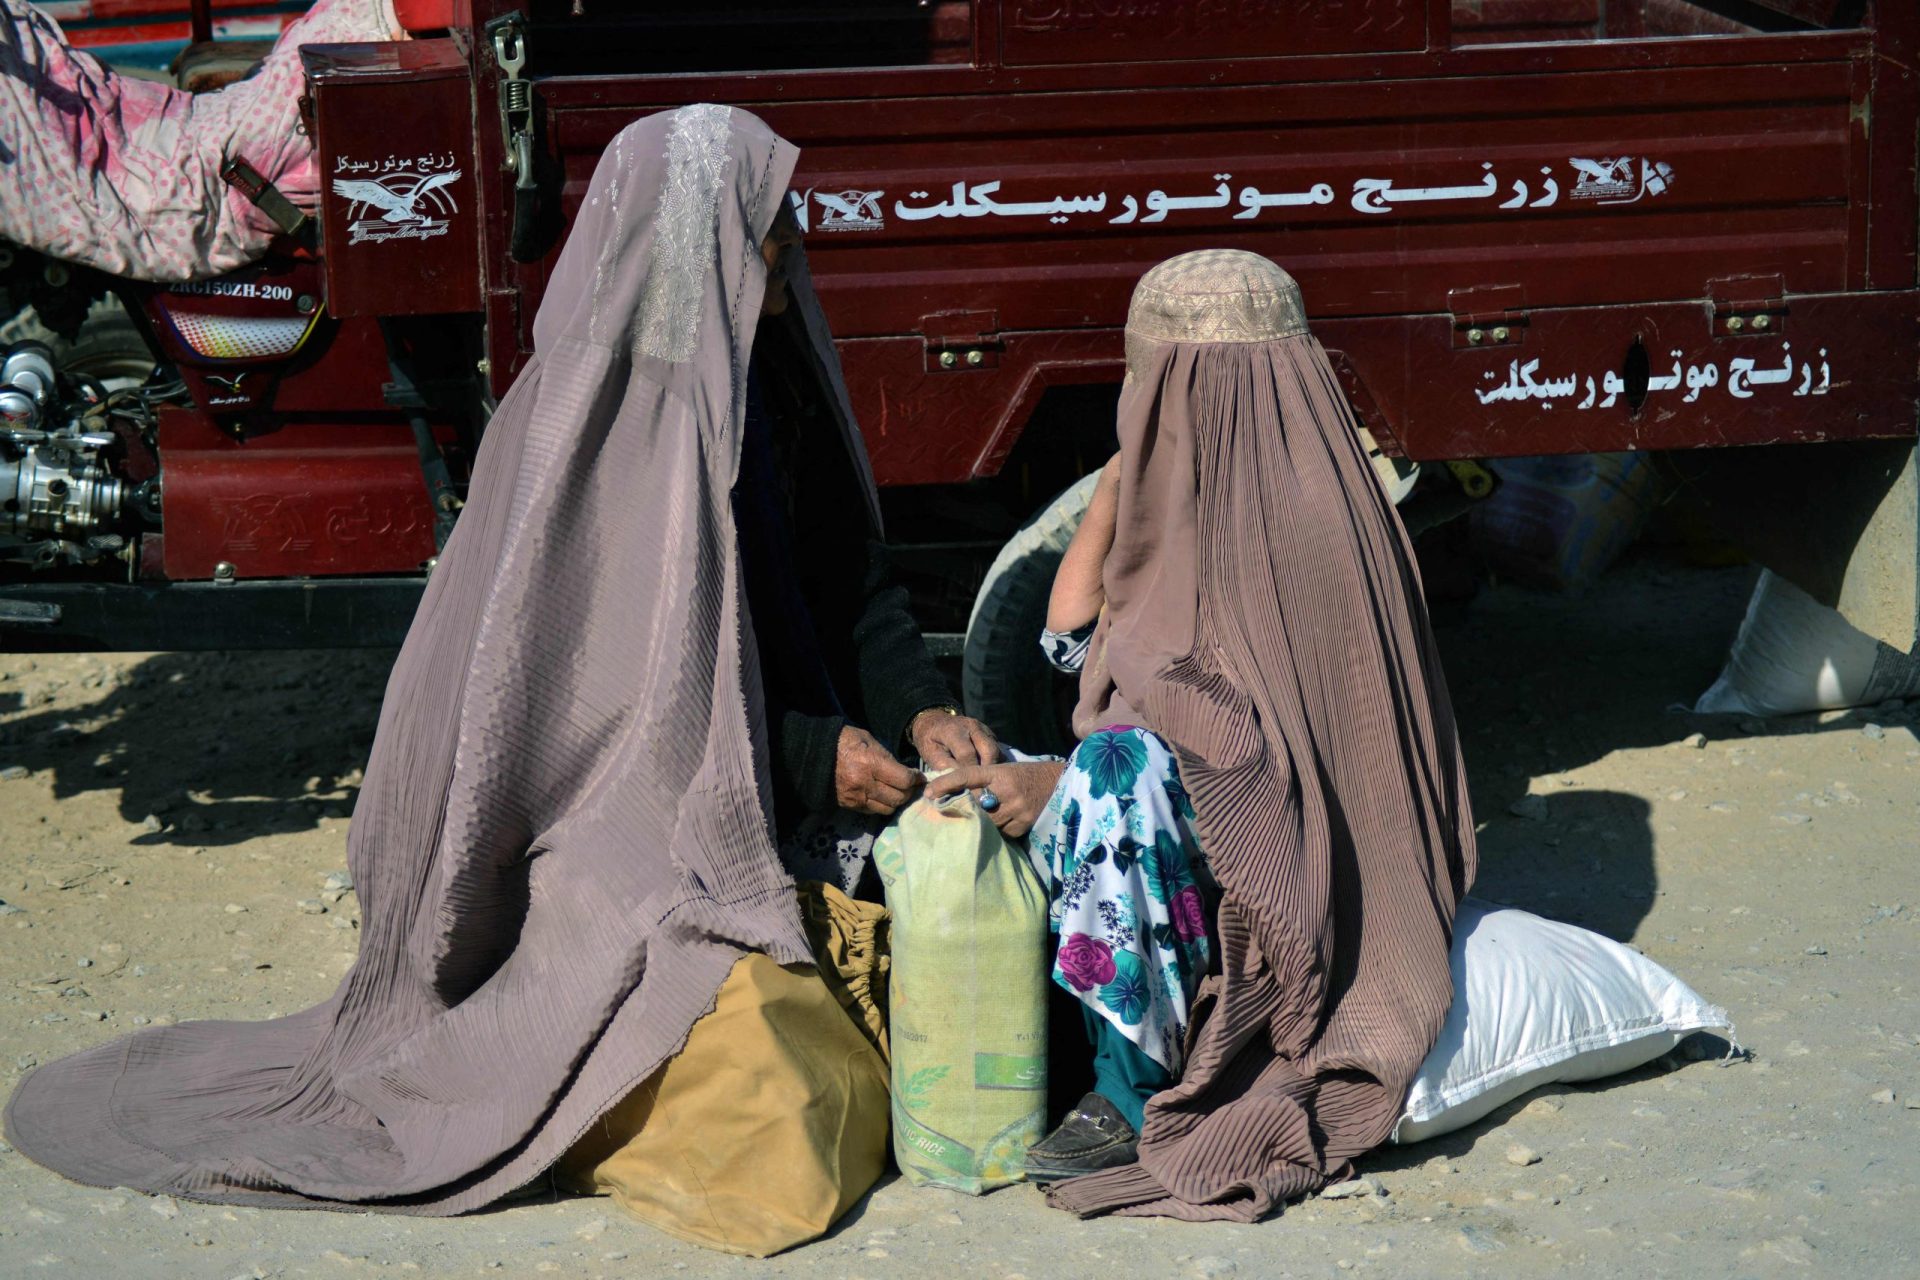 Talibã impõe cada vez mais restrições às mulheres